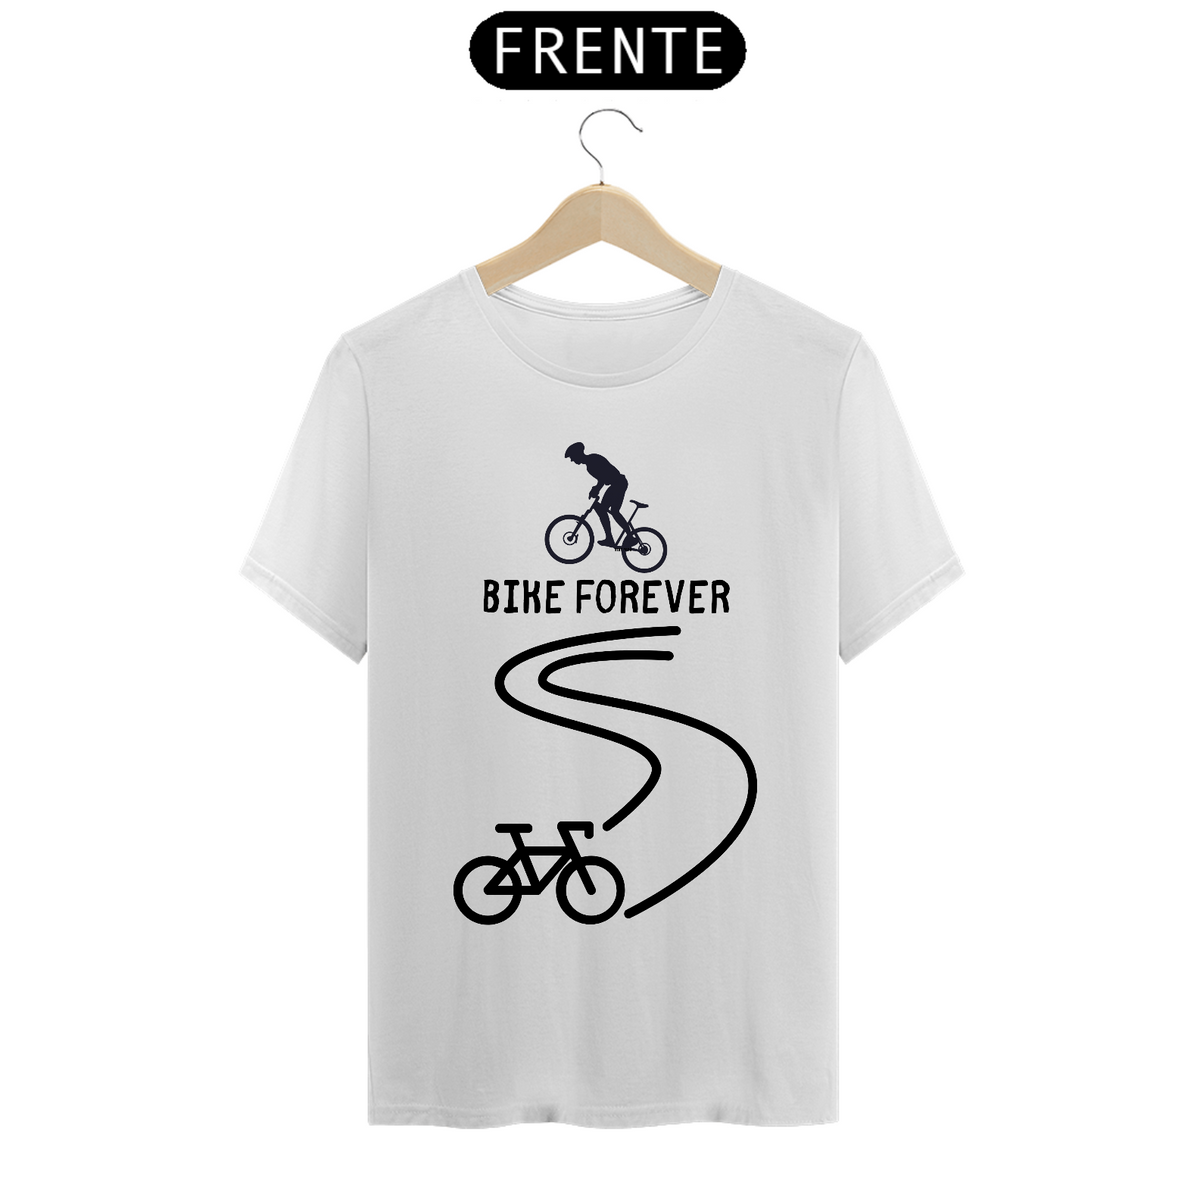 Nome do produto: Camisa Bike forever